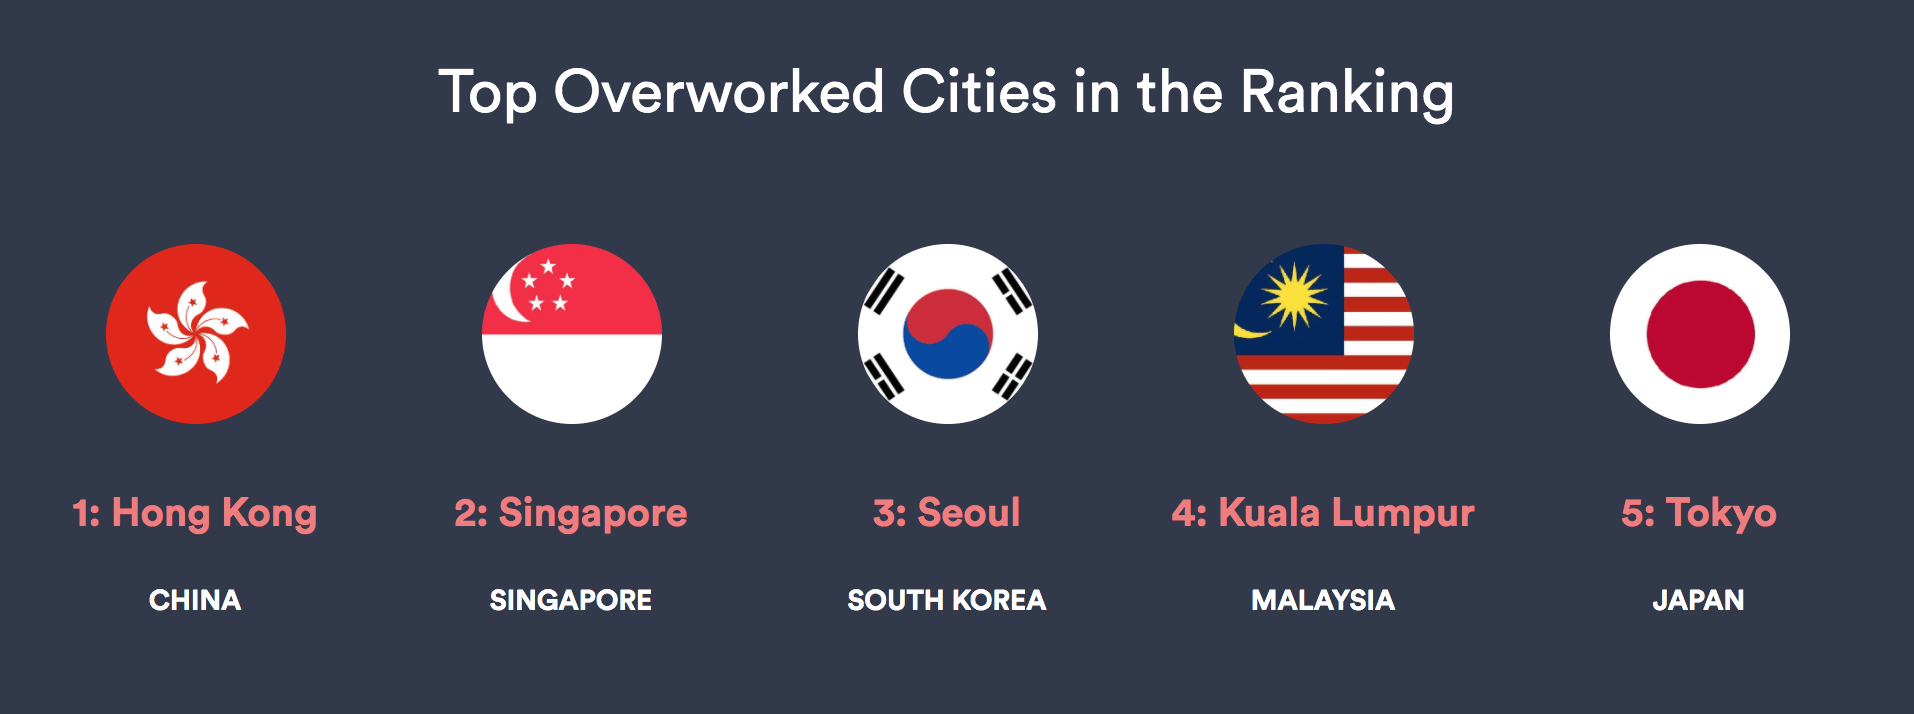 KL Overworked City - top 5 overworked cities